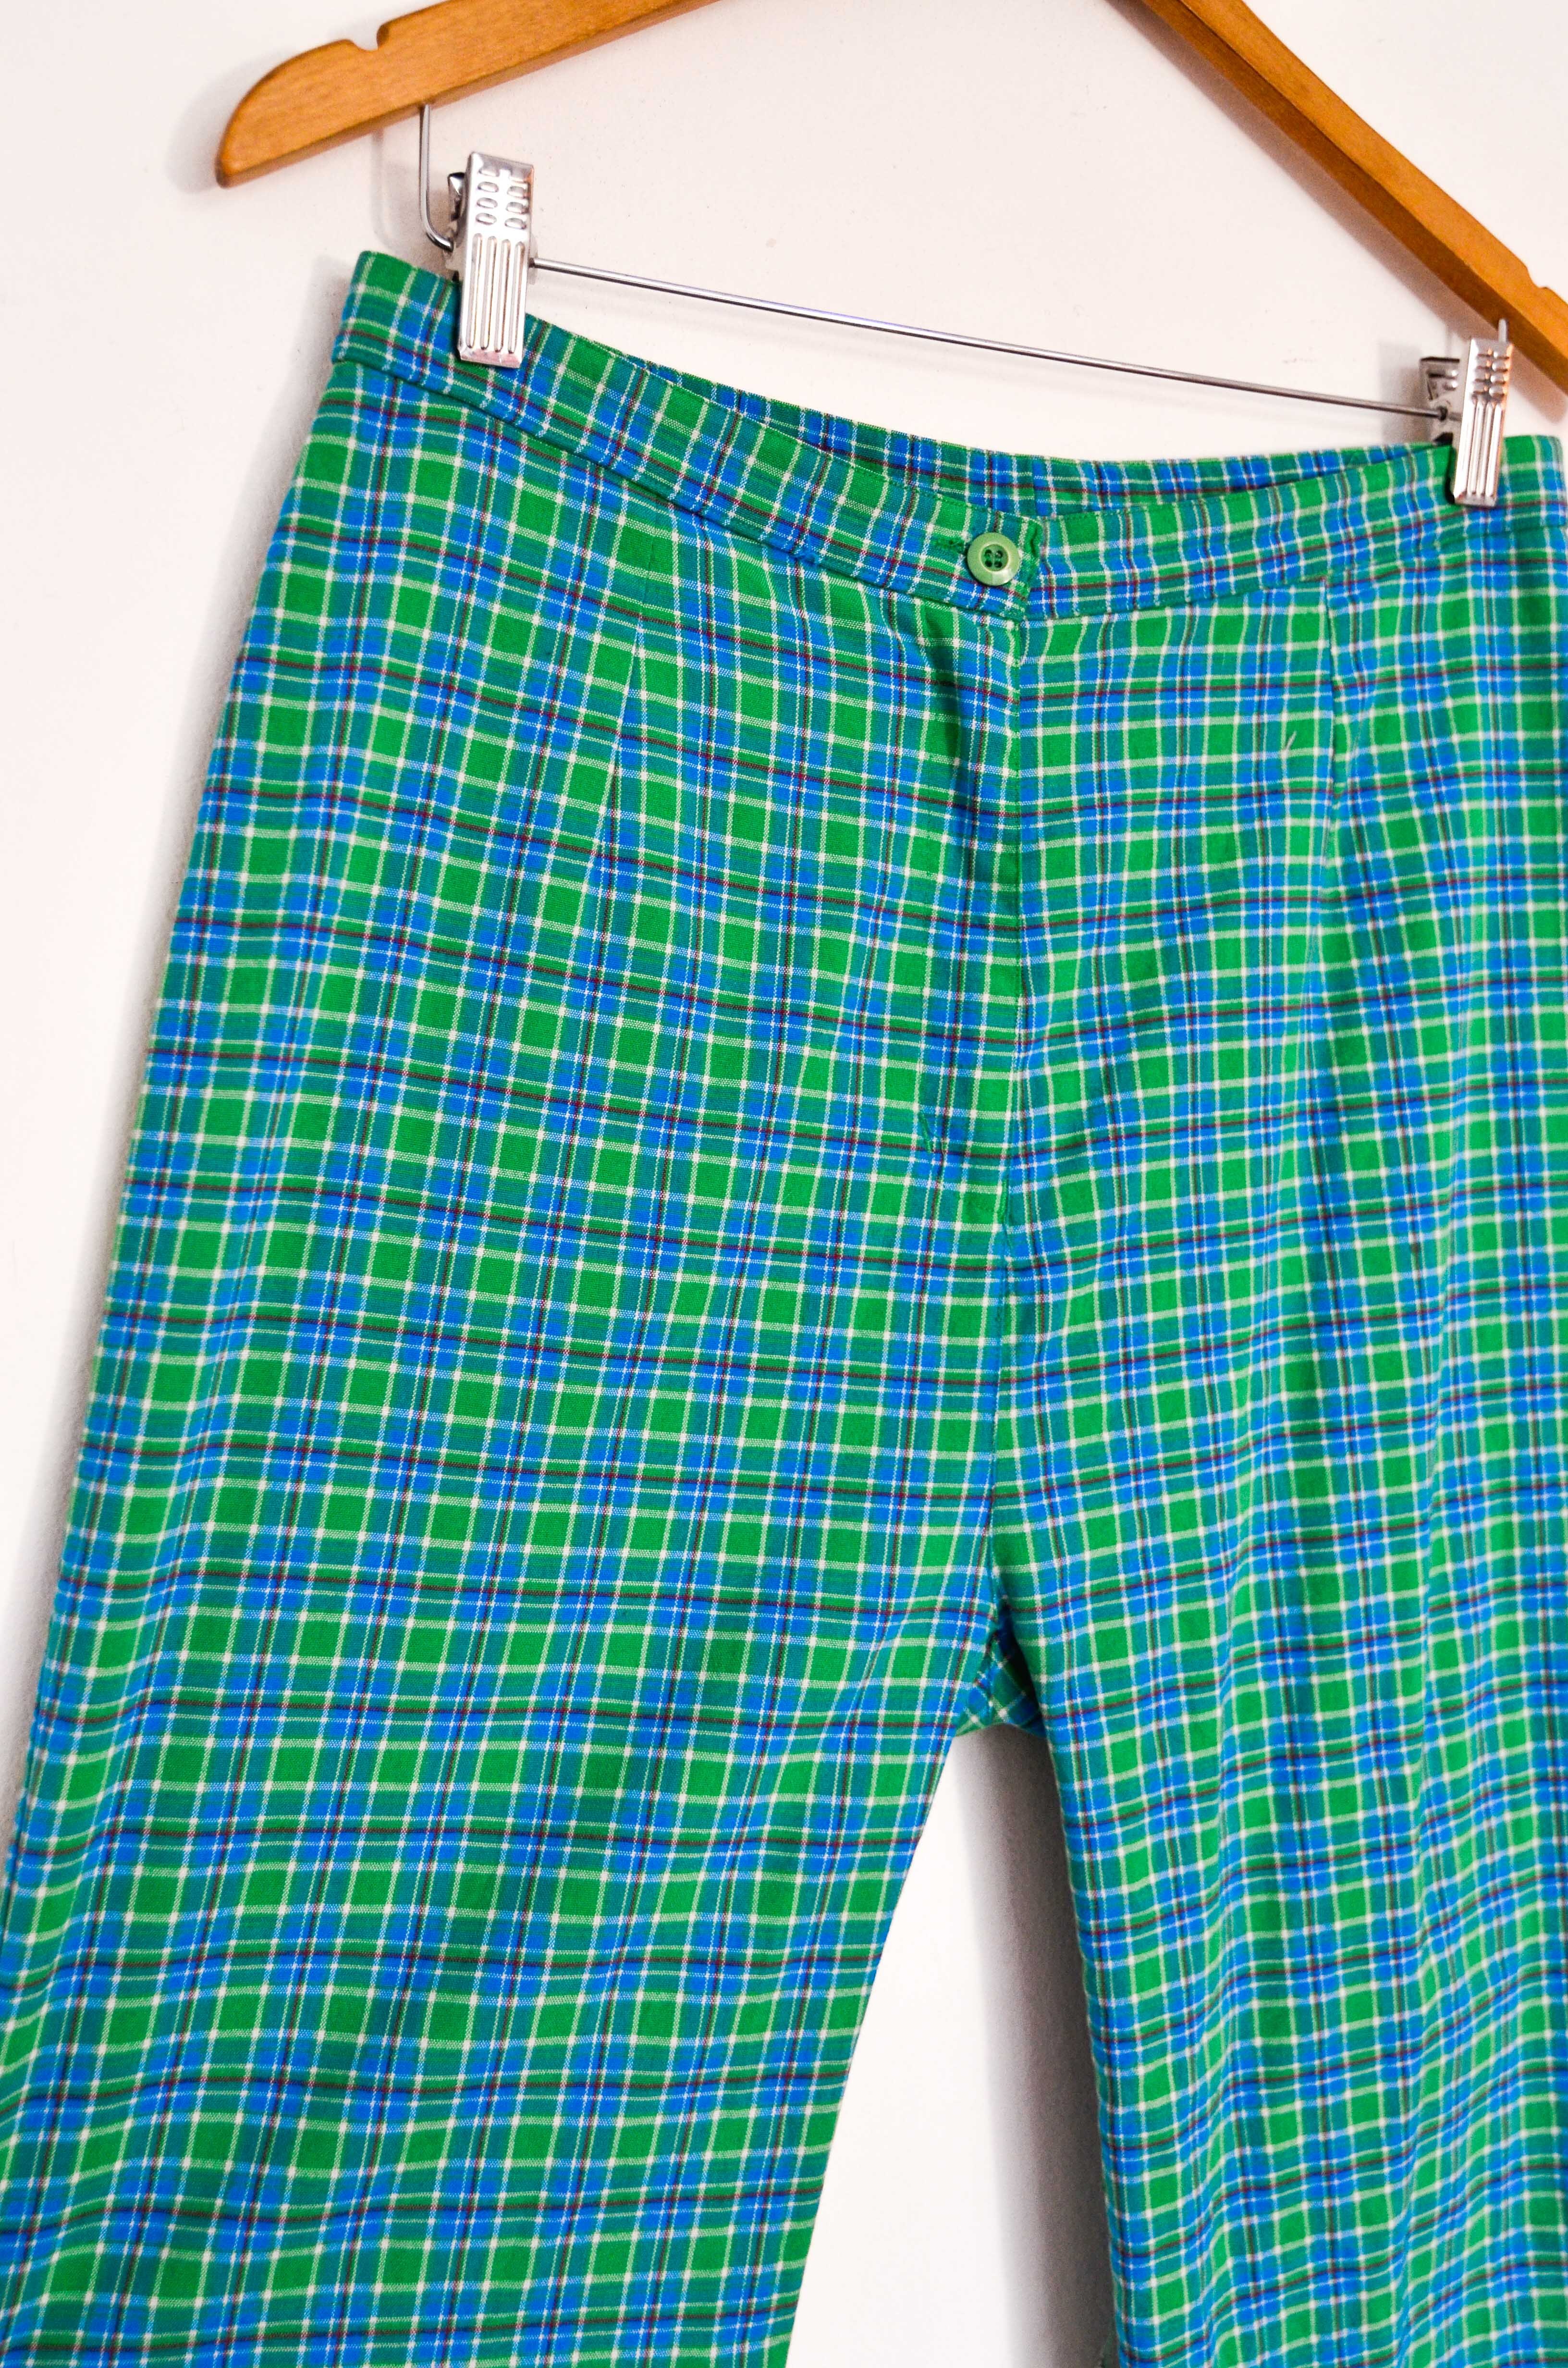 Pantalón verde tartán 90s